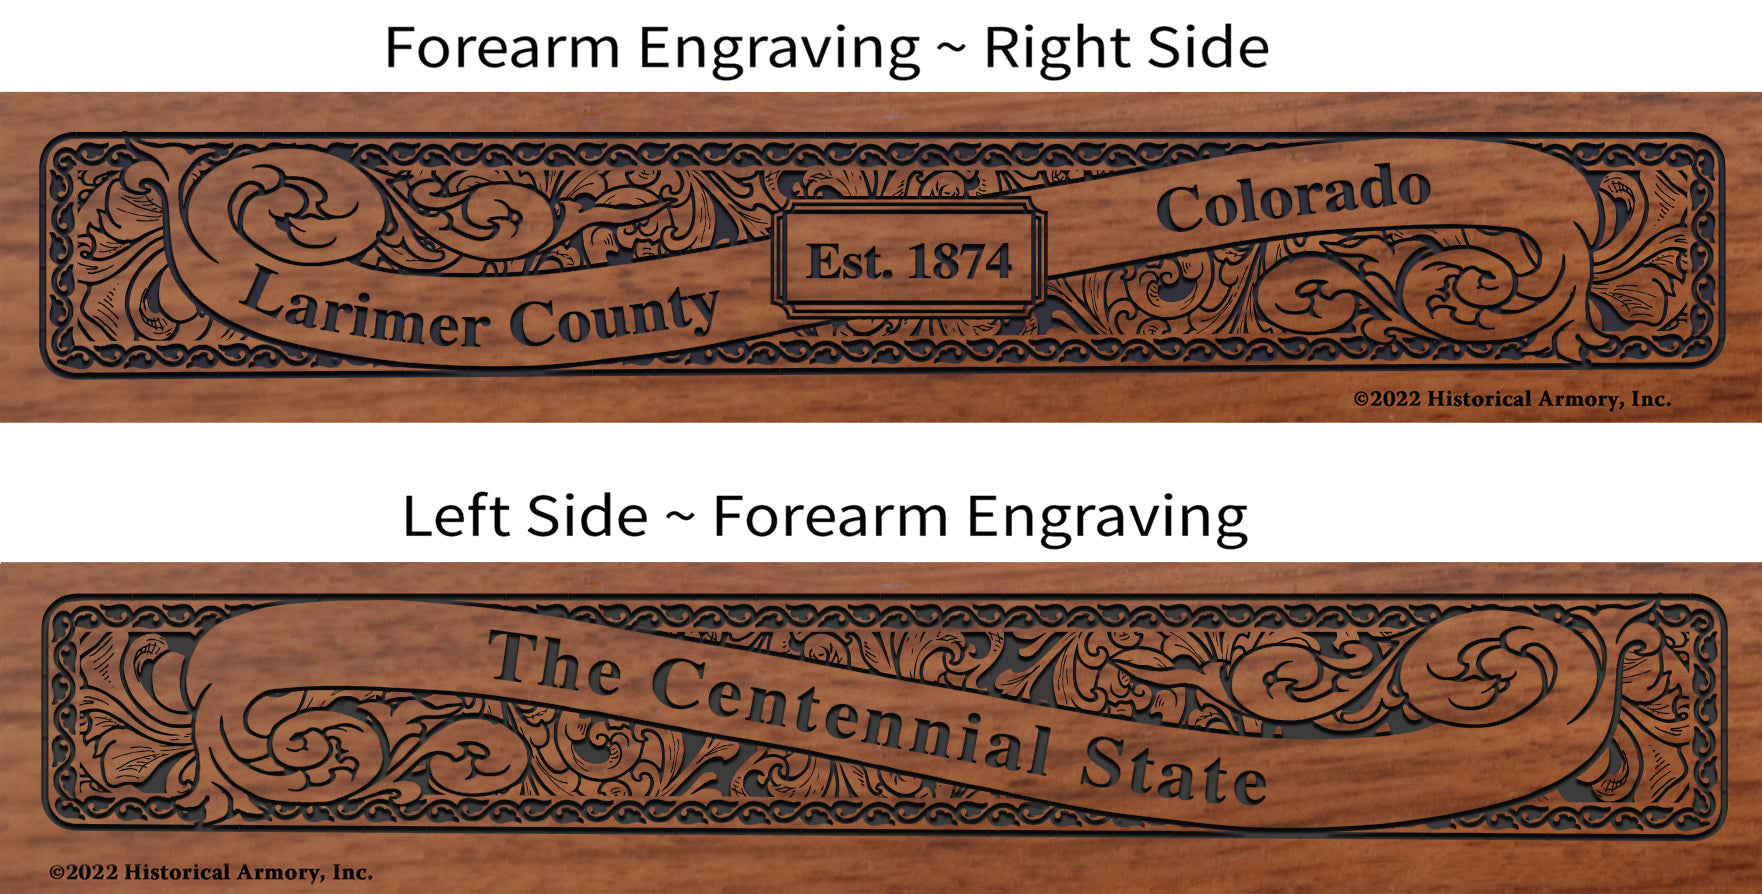 Larimer County Colorado Engraved Rifle Forearm